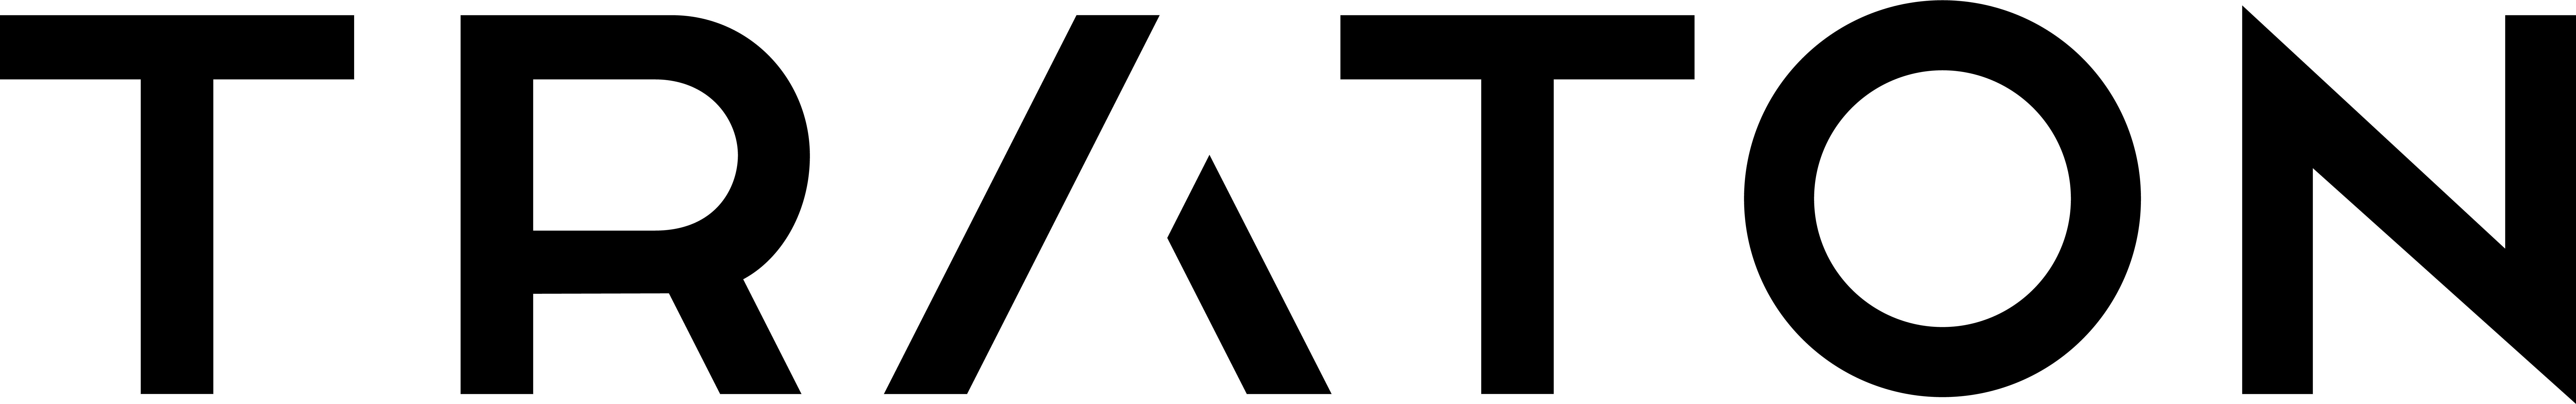 Traton Logo